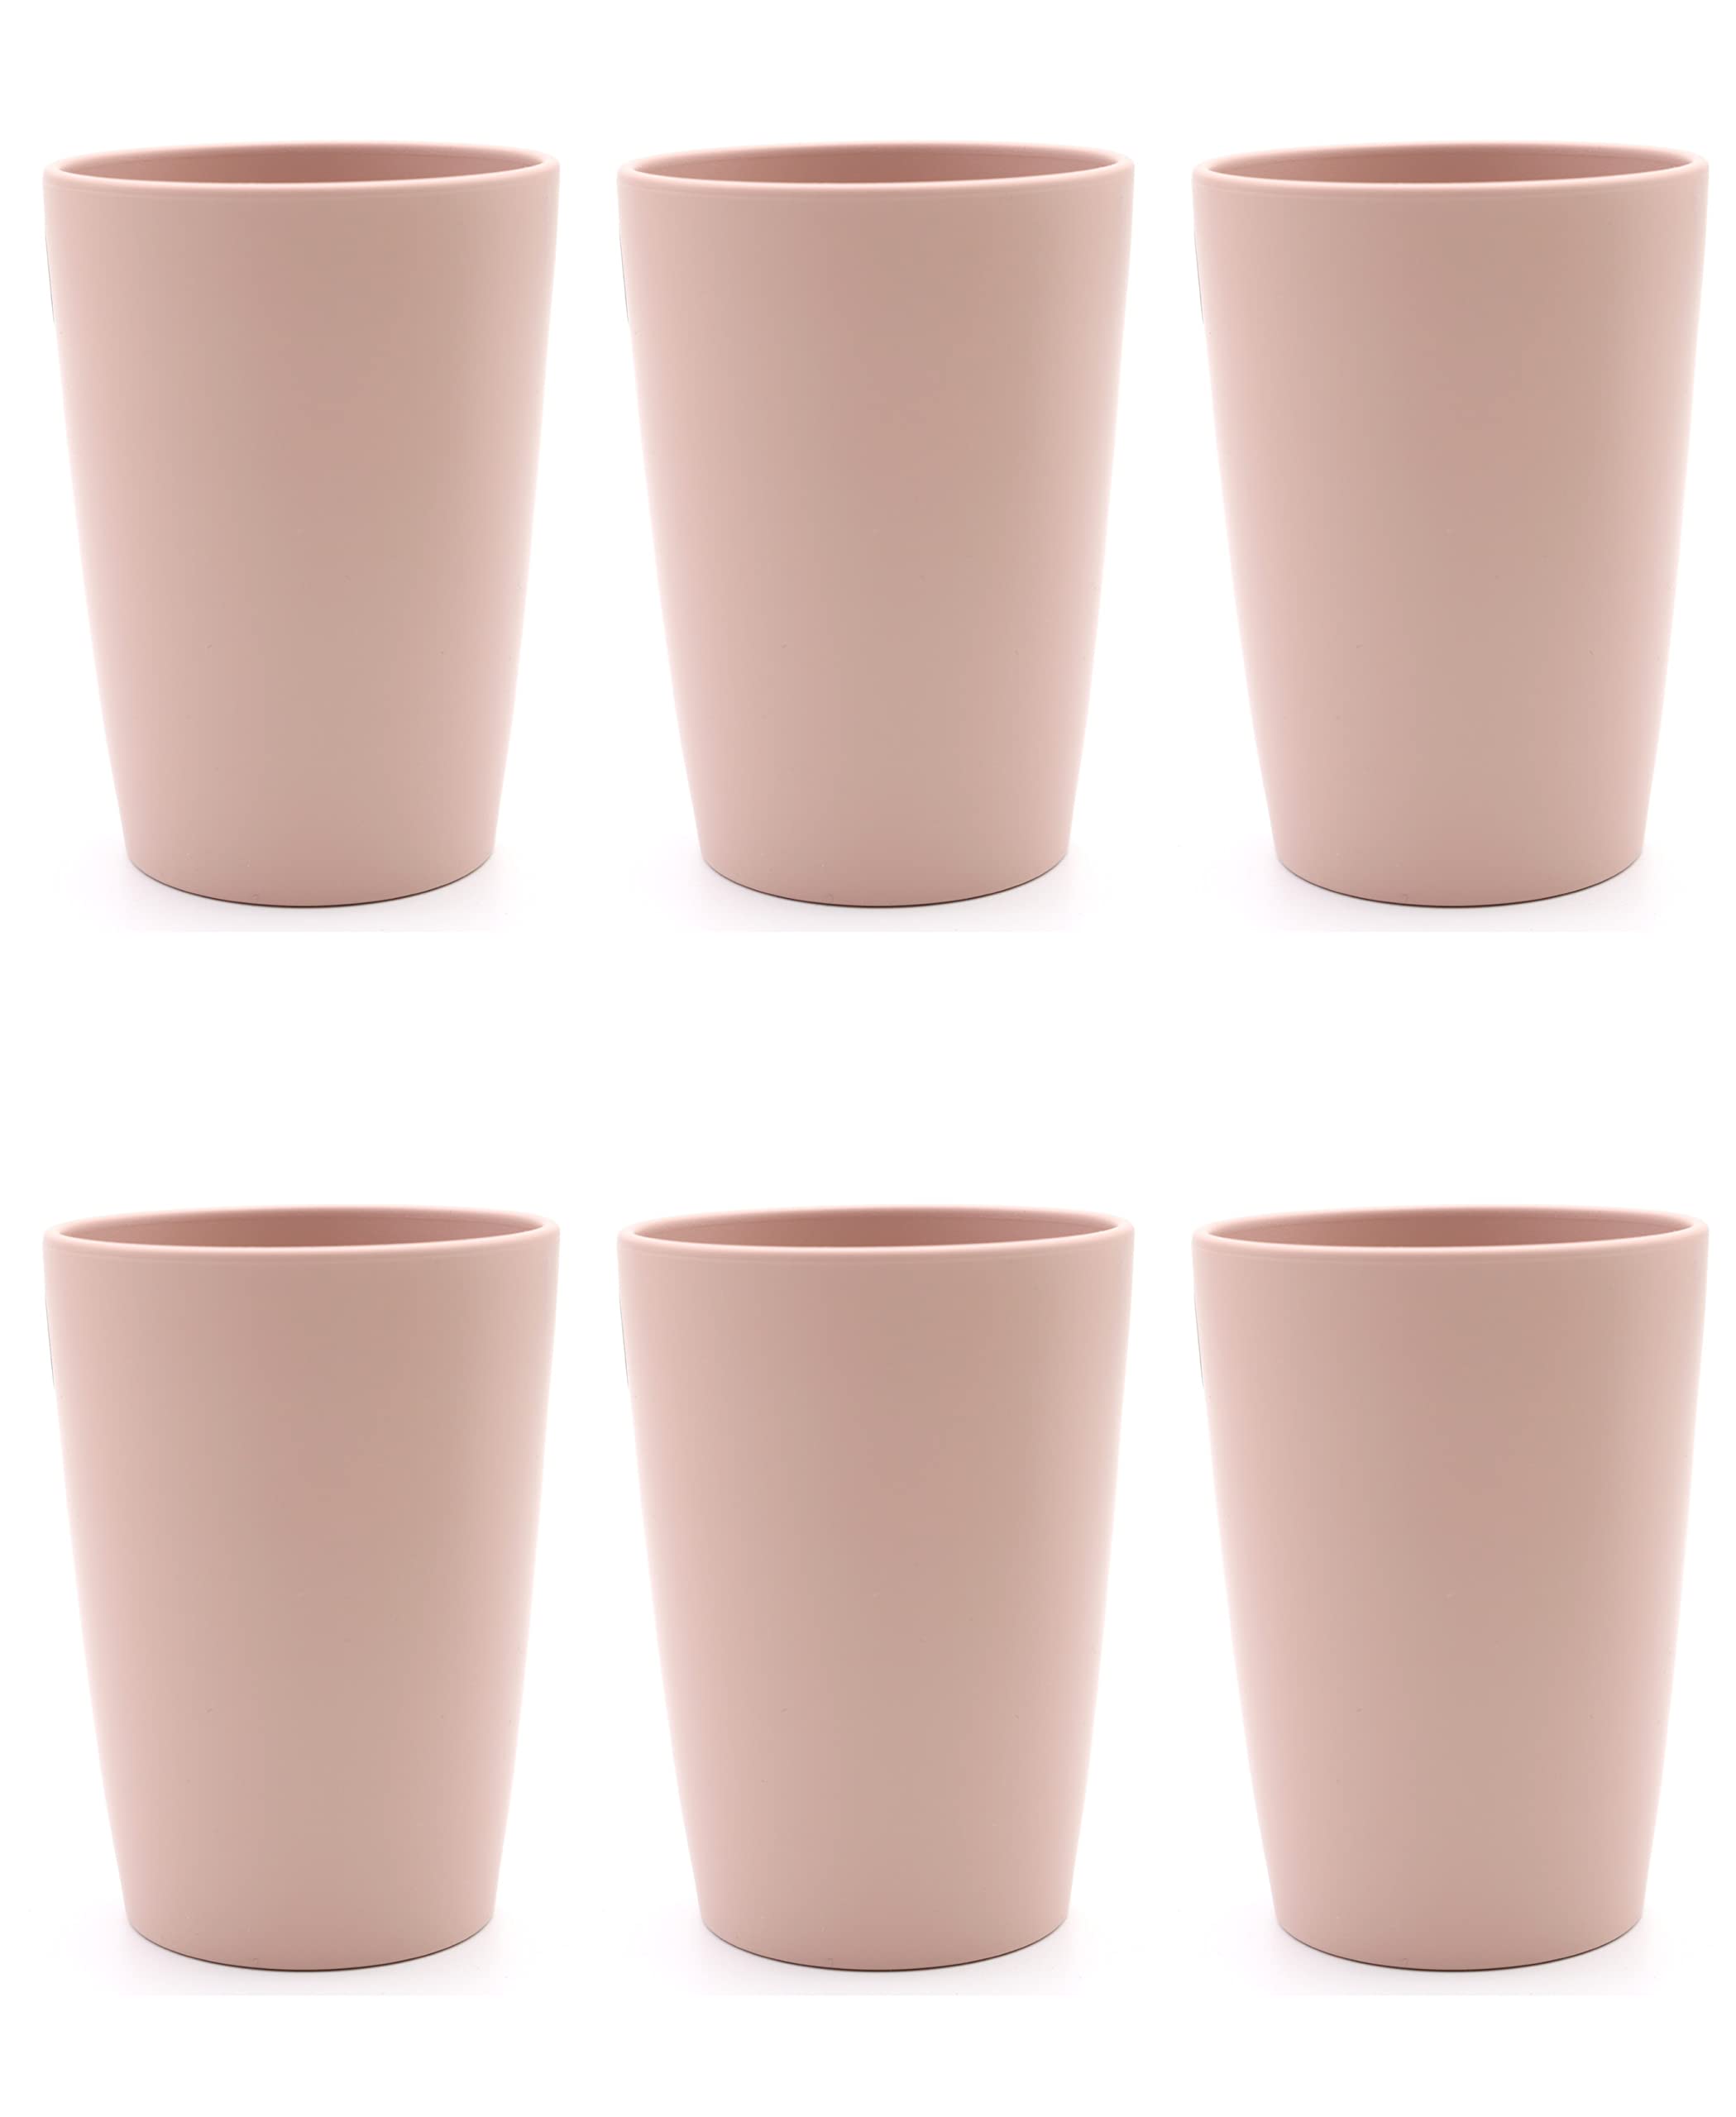 Magu 6 Nachhaltiger Biopolymer Becher (6 Farben) Farbe: Kirschblüte 100% Erdölfrei | Robust und Nachhaltig | Kunststoff Trinkbecher oder Zahnputzbecher | 6er Set rosa